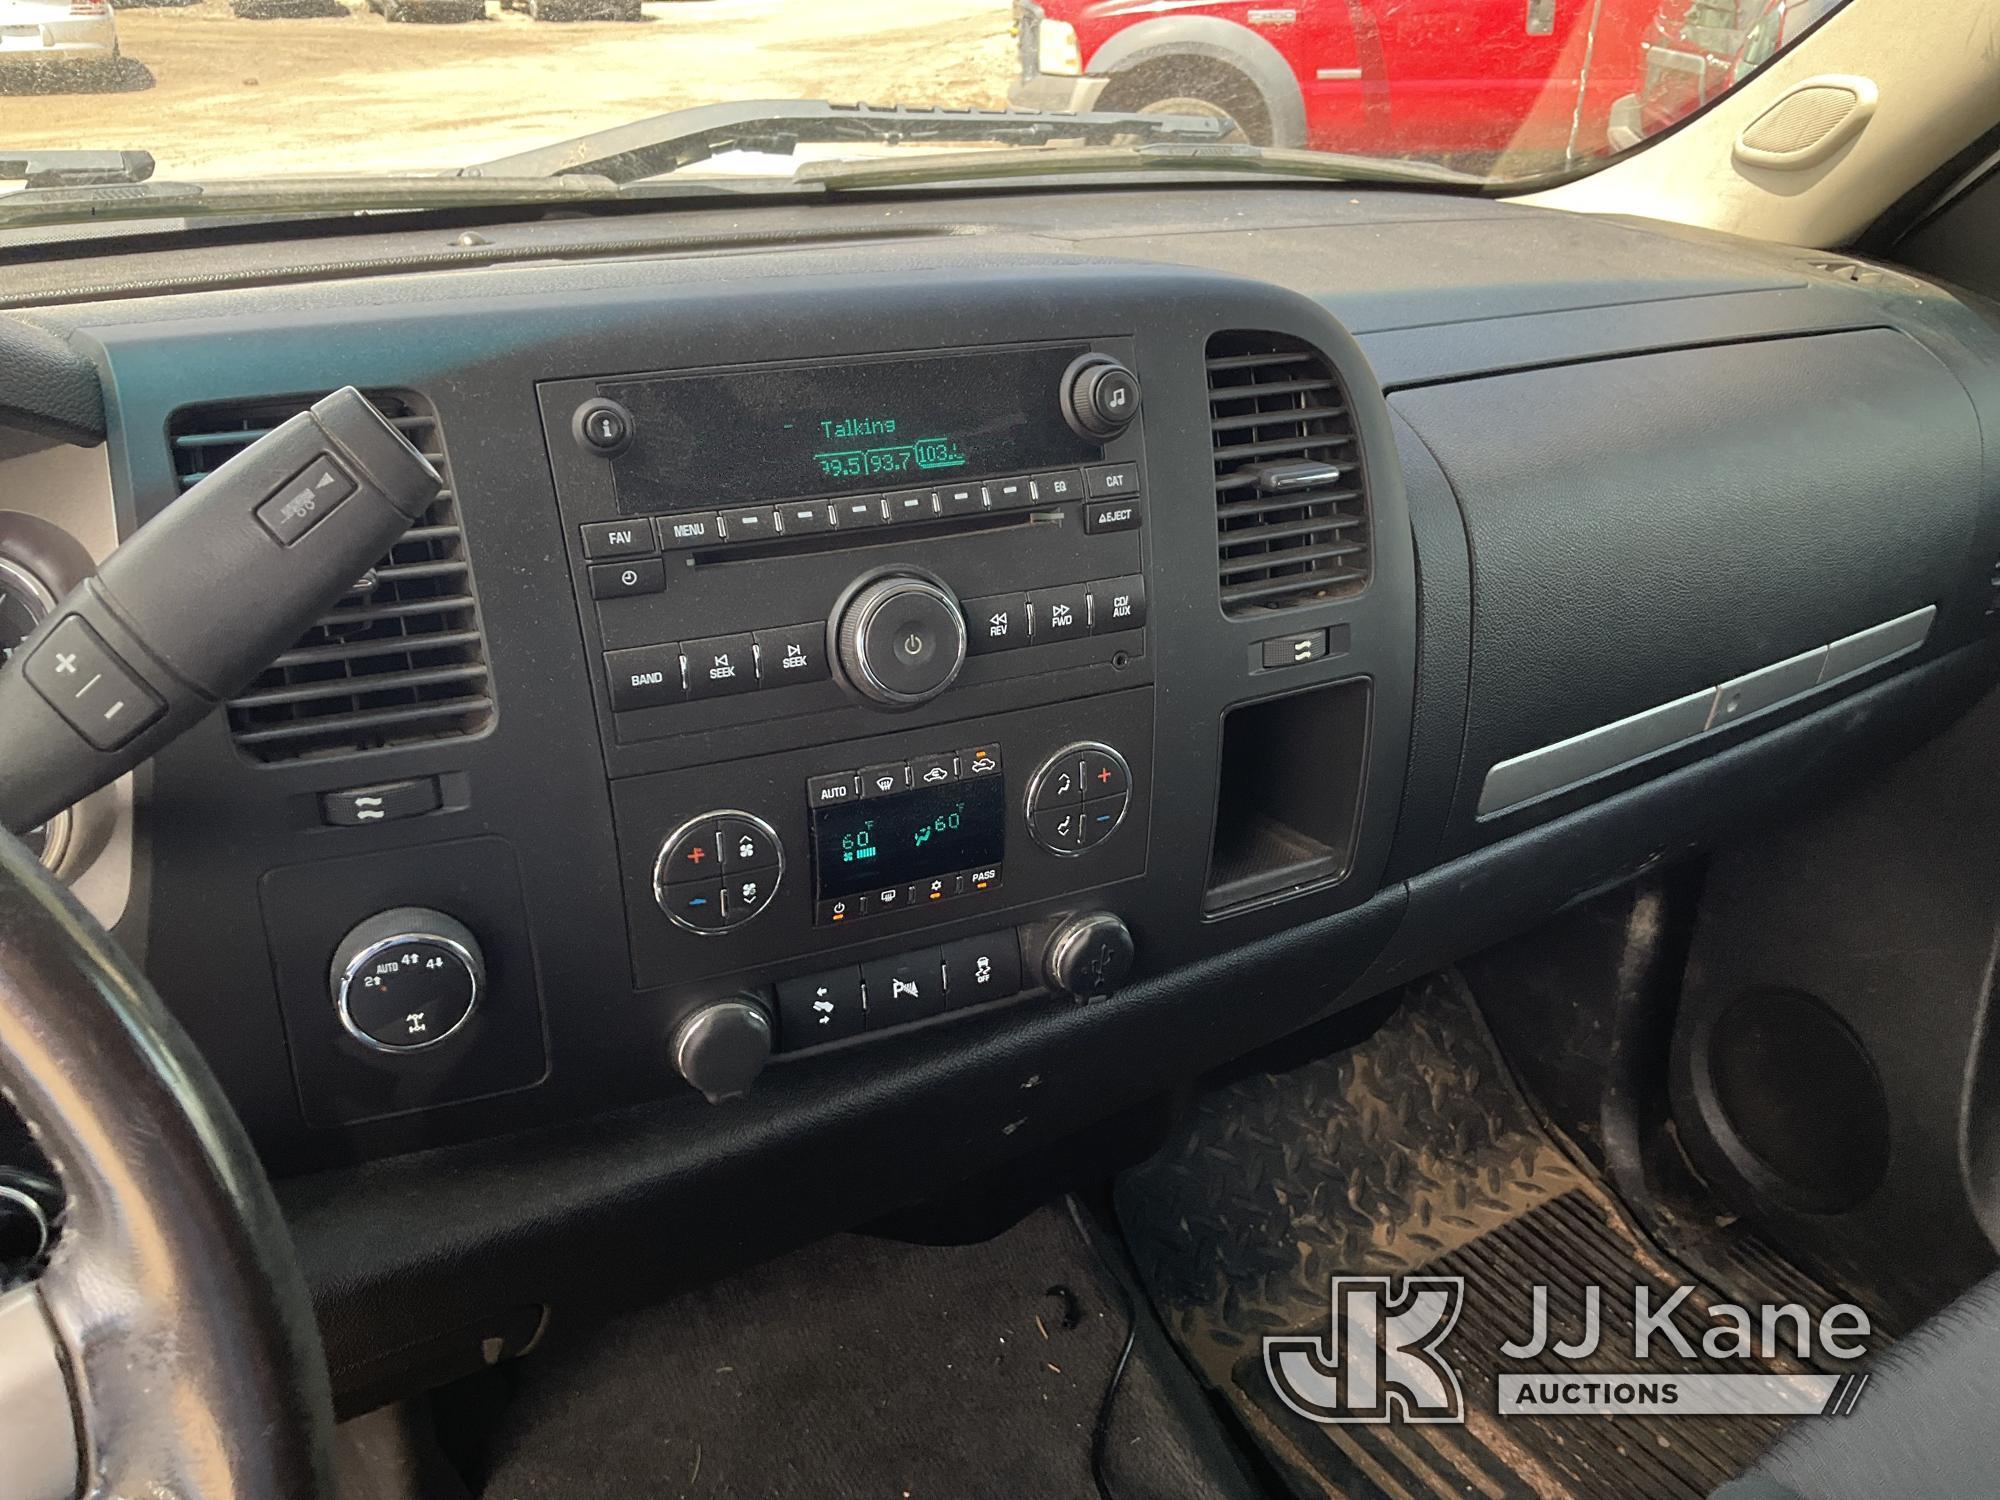 (Castle Rock, CO) 2013 Chevrolet Silverado 1500 4x4 Crew-Cab Pickup Truck Runs & Moves